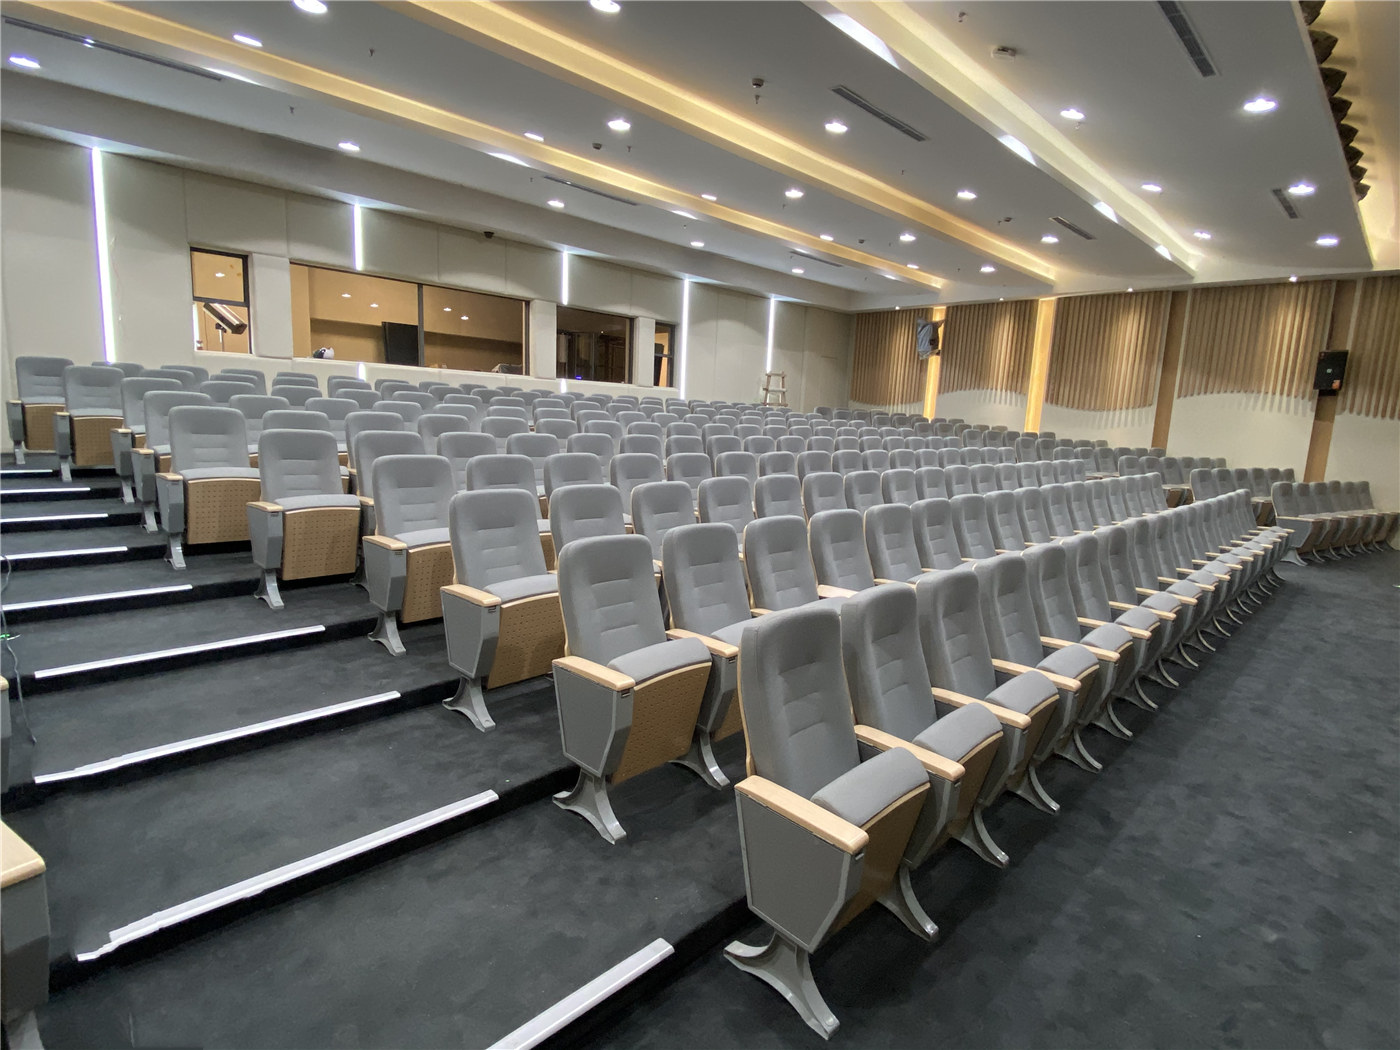 Oplev uovertruffen håndværk og kvalitet i auditoriumssæder fra en betroet producent108